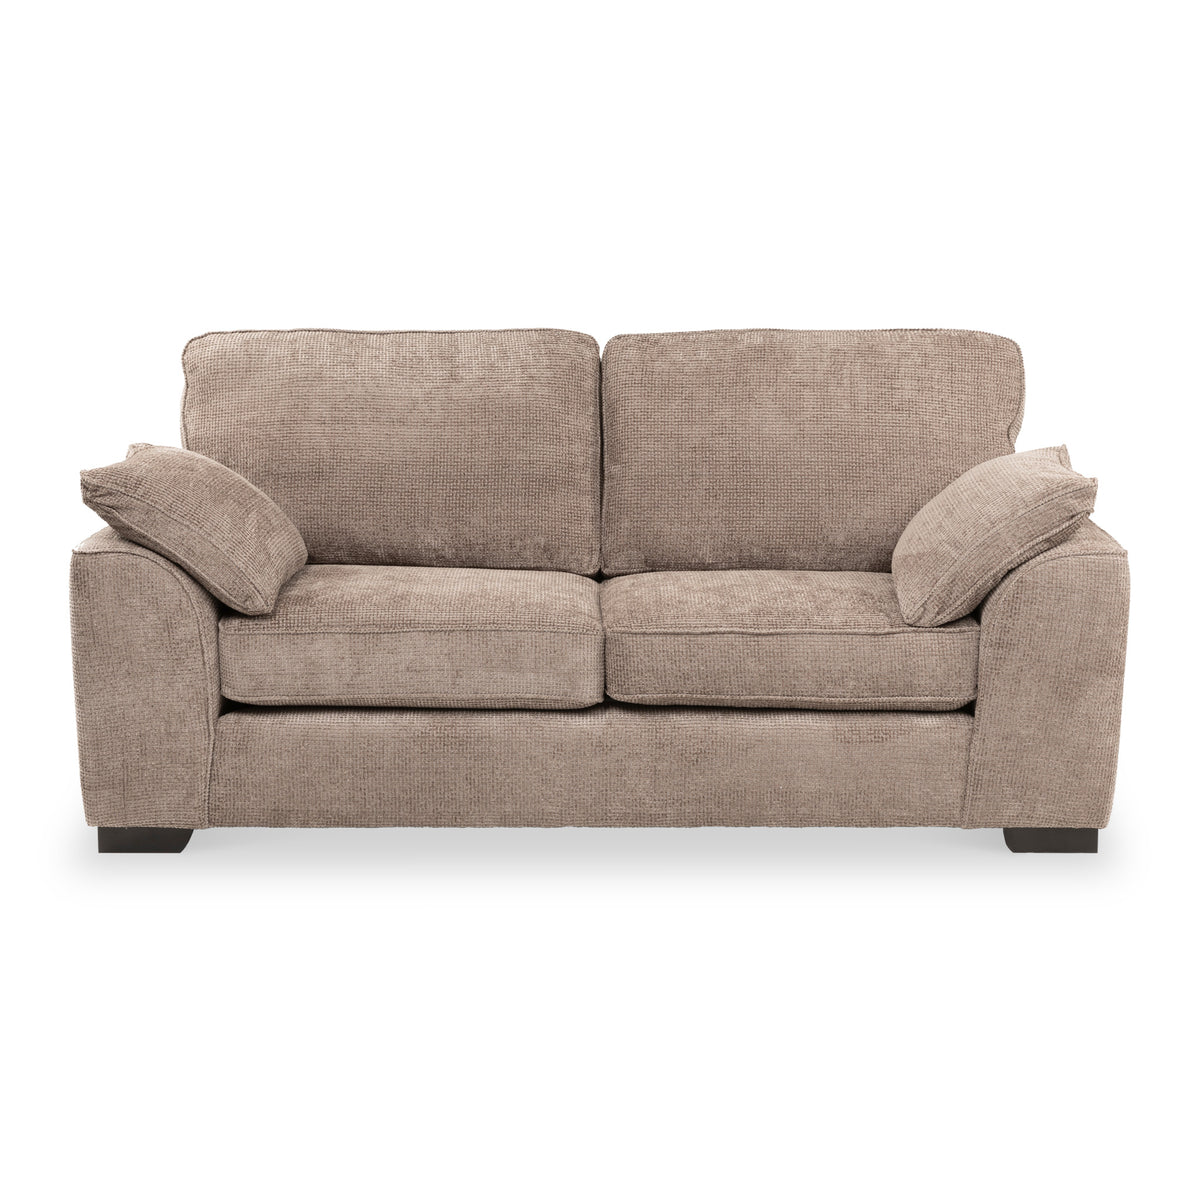 Bude 3 Seater Sofa Pewter Roseland Furniture